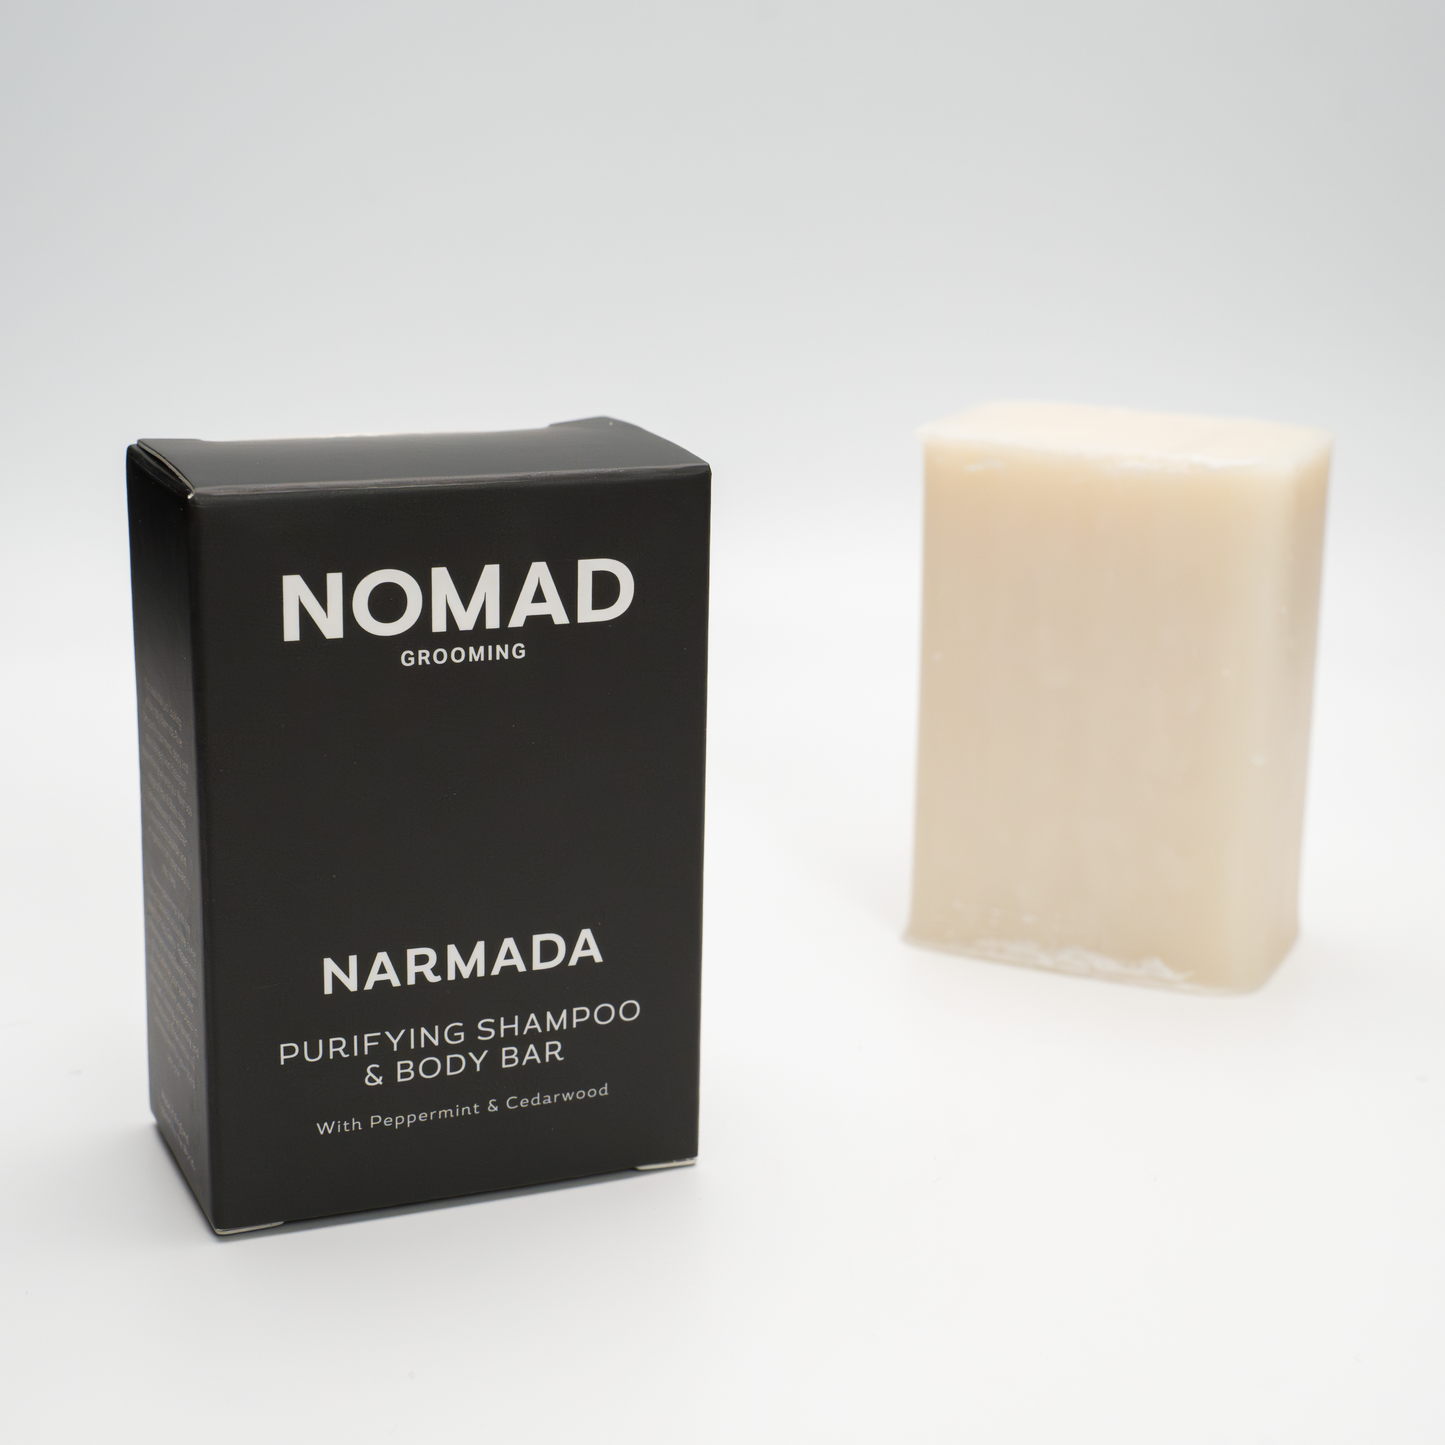 Narmada - Shampoo & Body Bar 100g